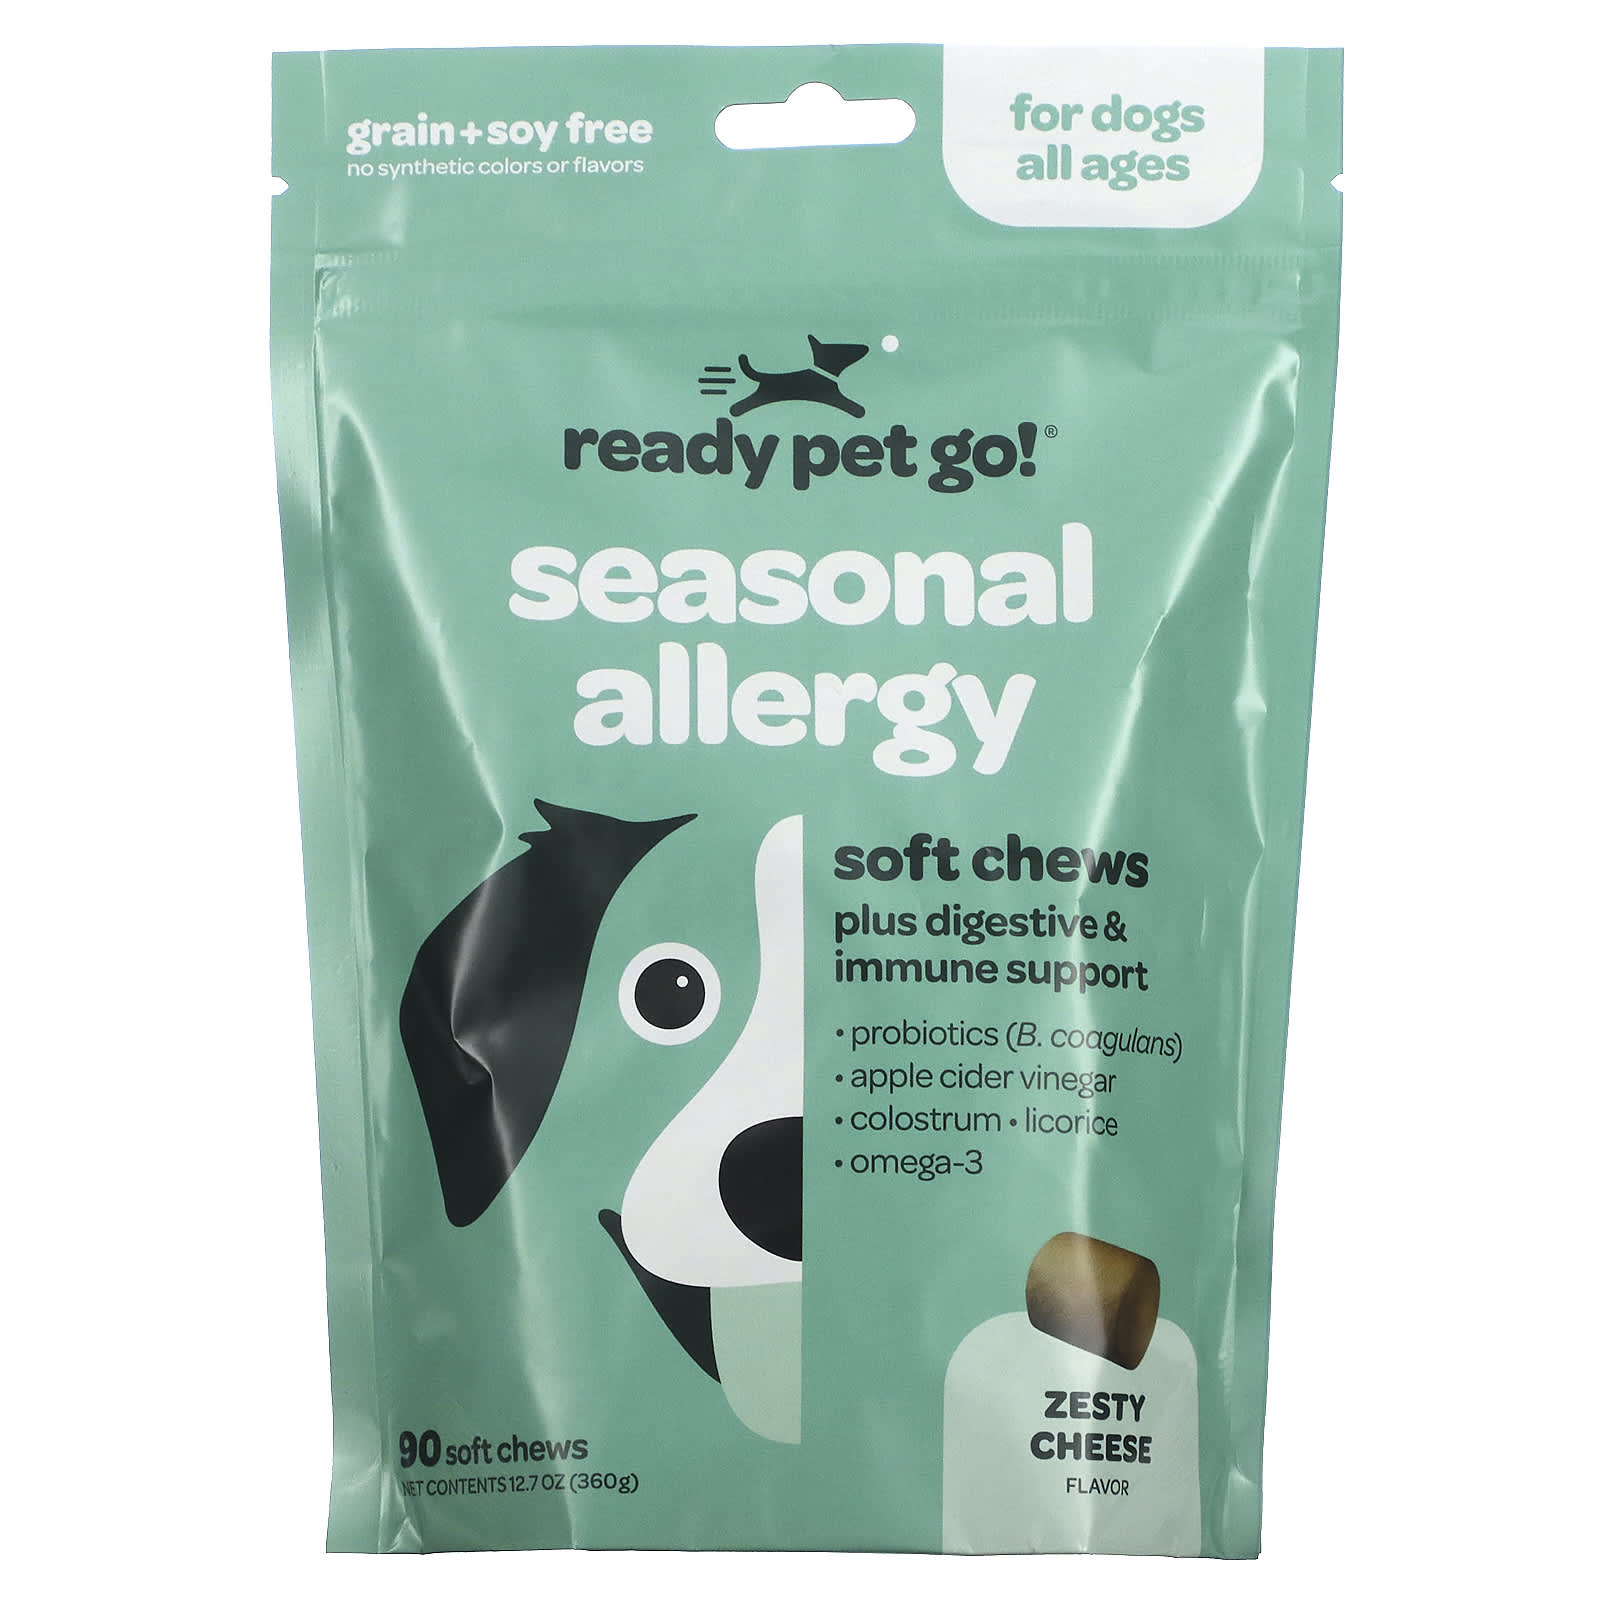 Жевательные Таблетки для Собак Ready Pet Go для борьбы с аллергией и иммунитетом, с сыром, 90 жевательных таблеток мука нутовая оргтиум 300 г